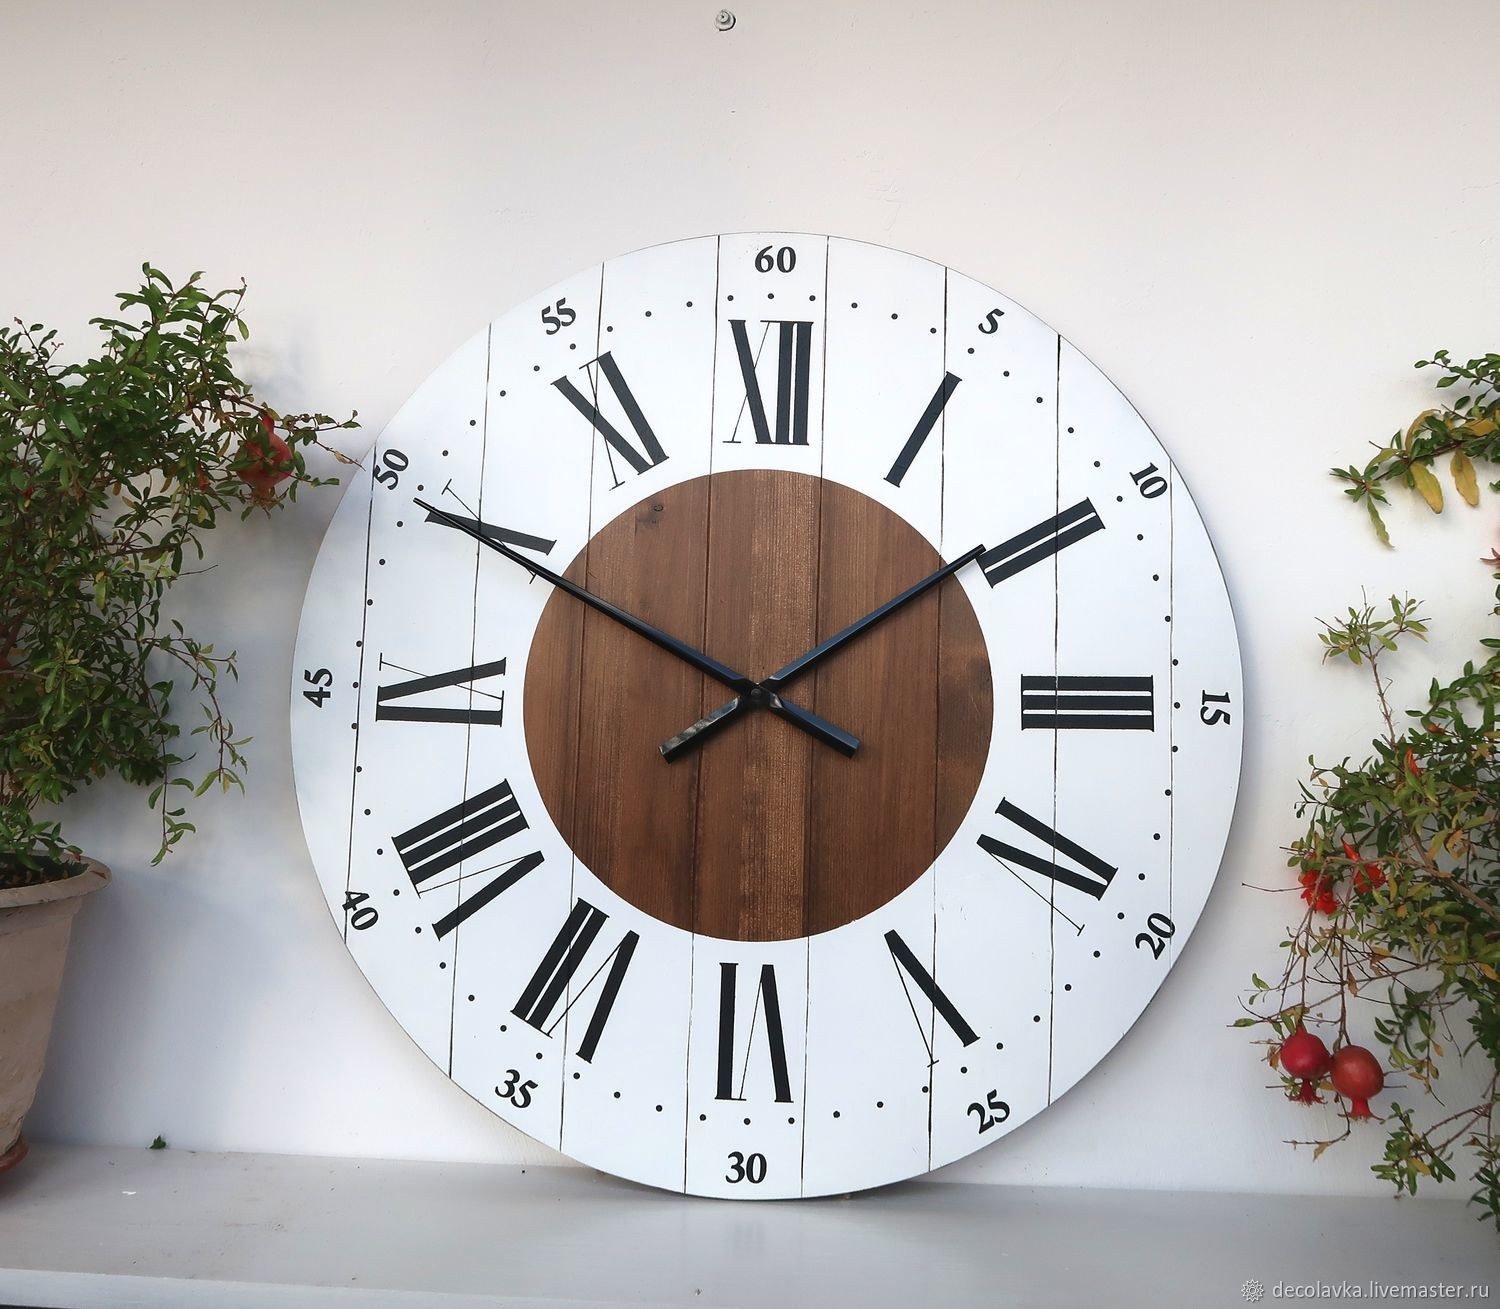 Часы настенные 60 см. Деревянные часы настенные в интерьере. Часы настенные интерьерные 60см. Часы настенные диаметр 60 см. Большие настенные часы в классическом интерьере.